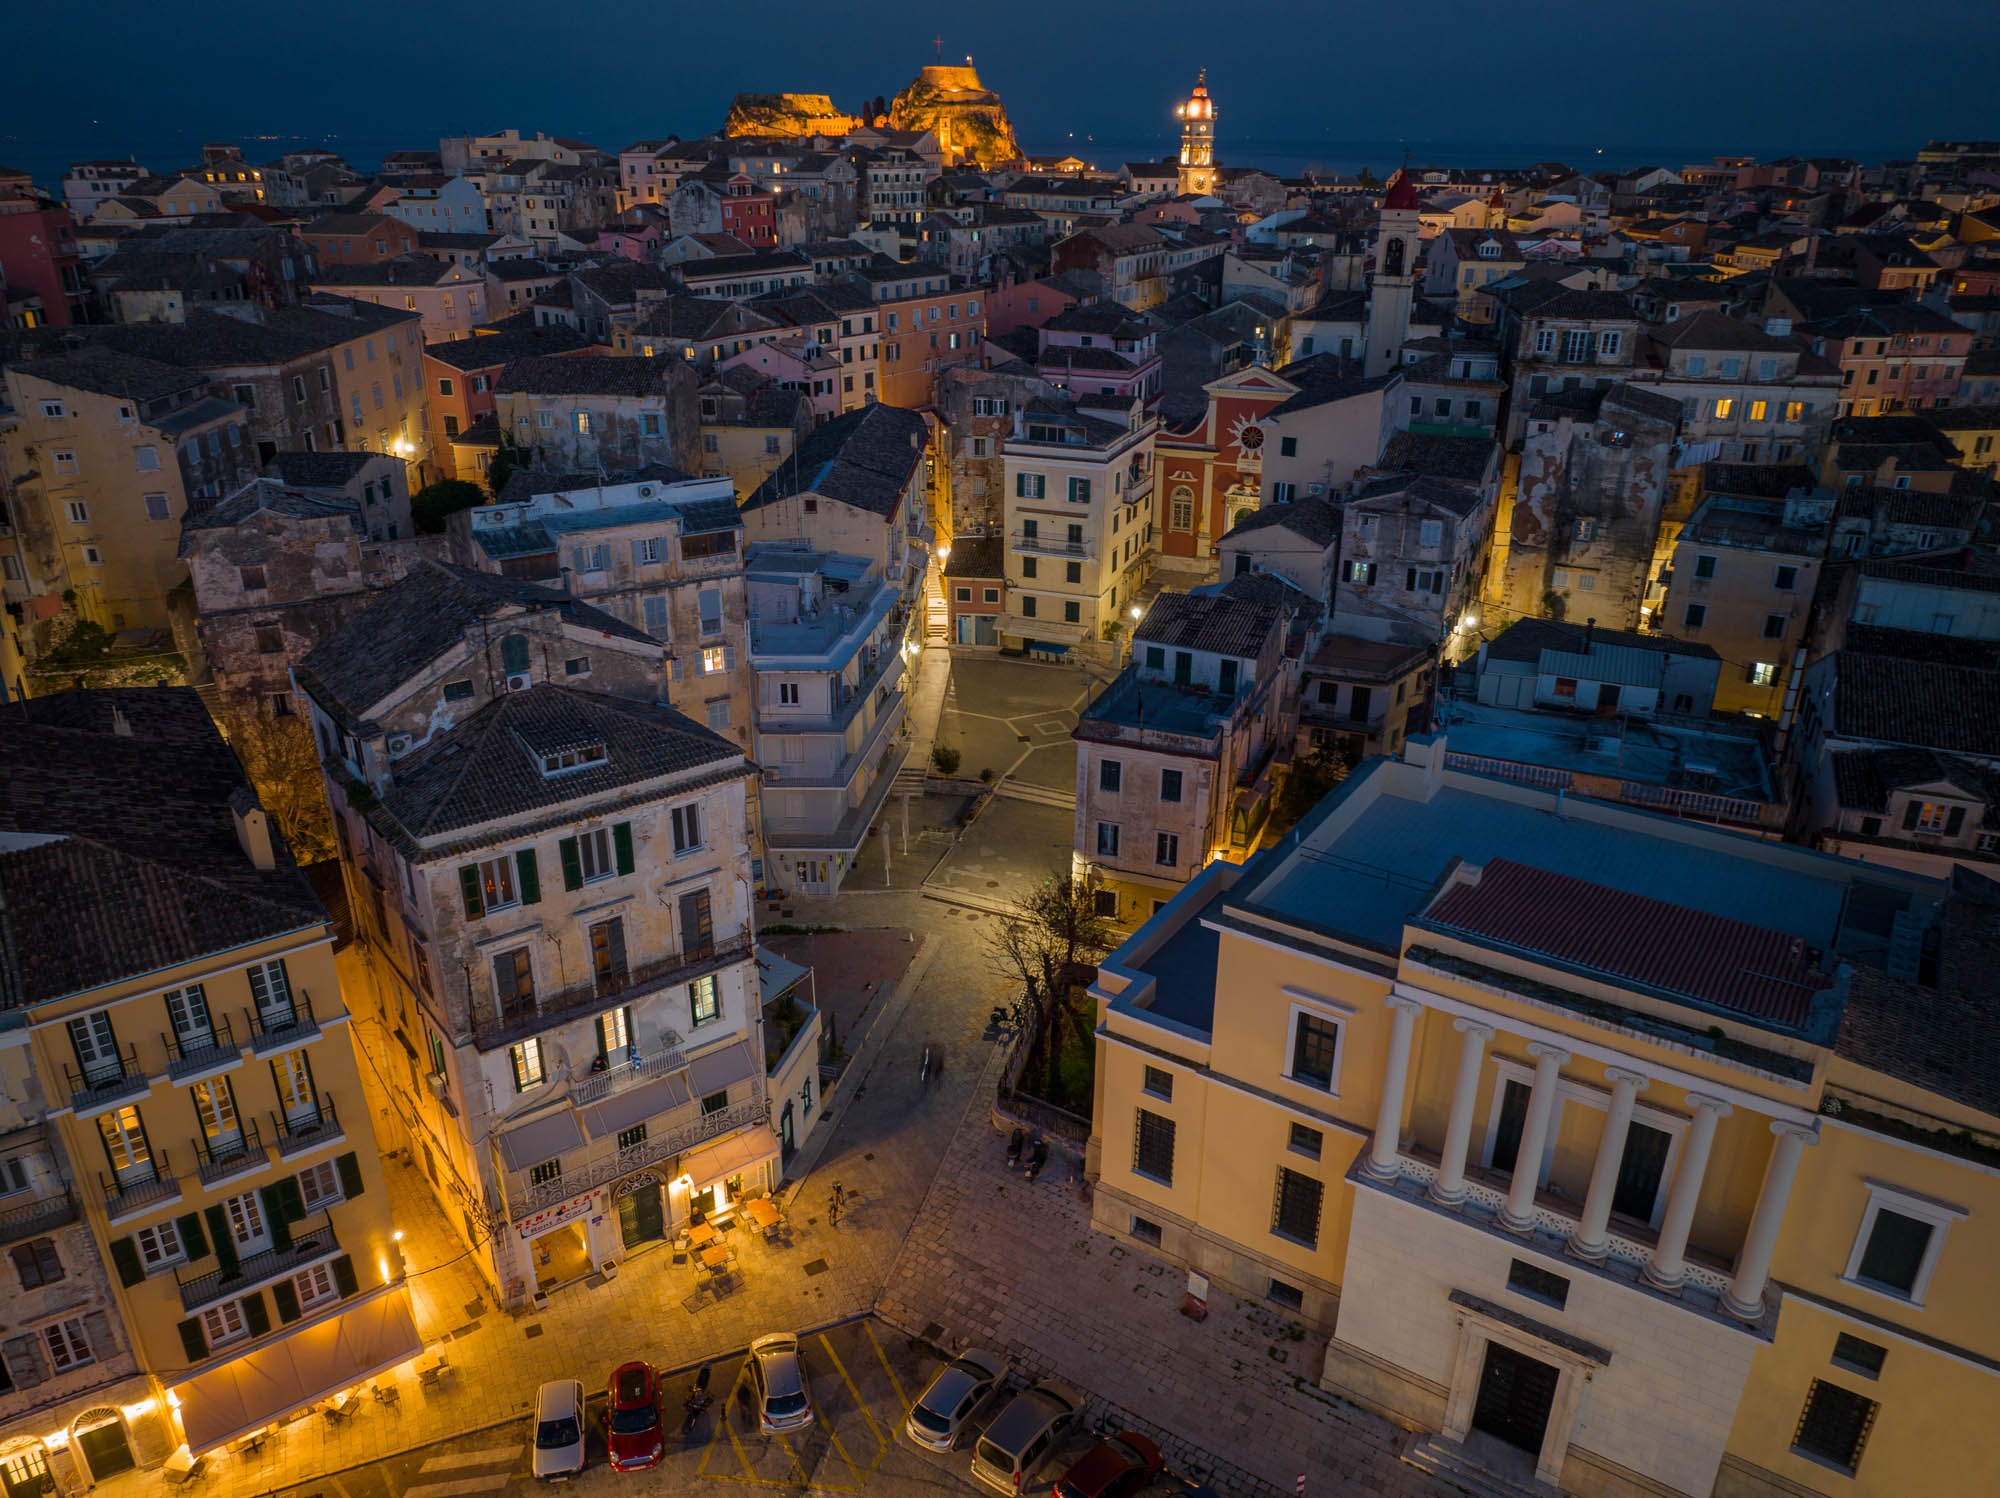 Oświetlone ulice miast Korfu urokliwy wieczór, widok z lotu ptaka